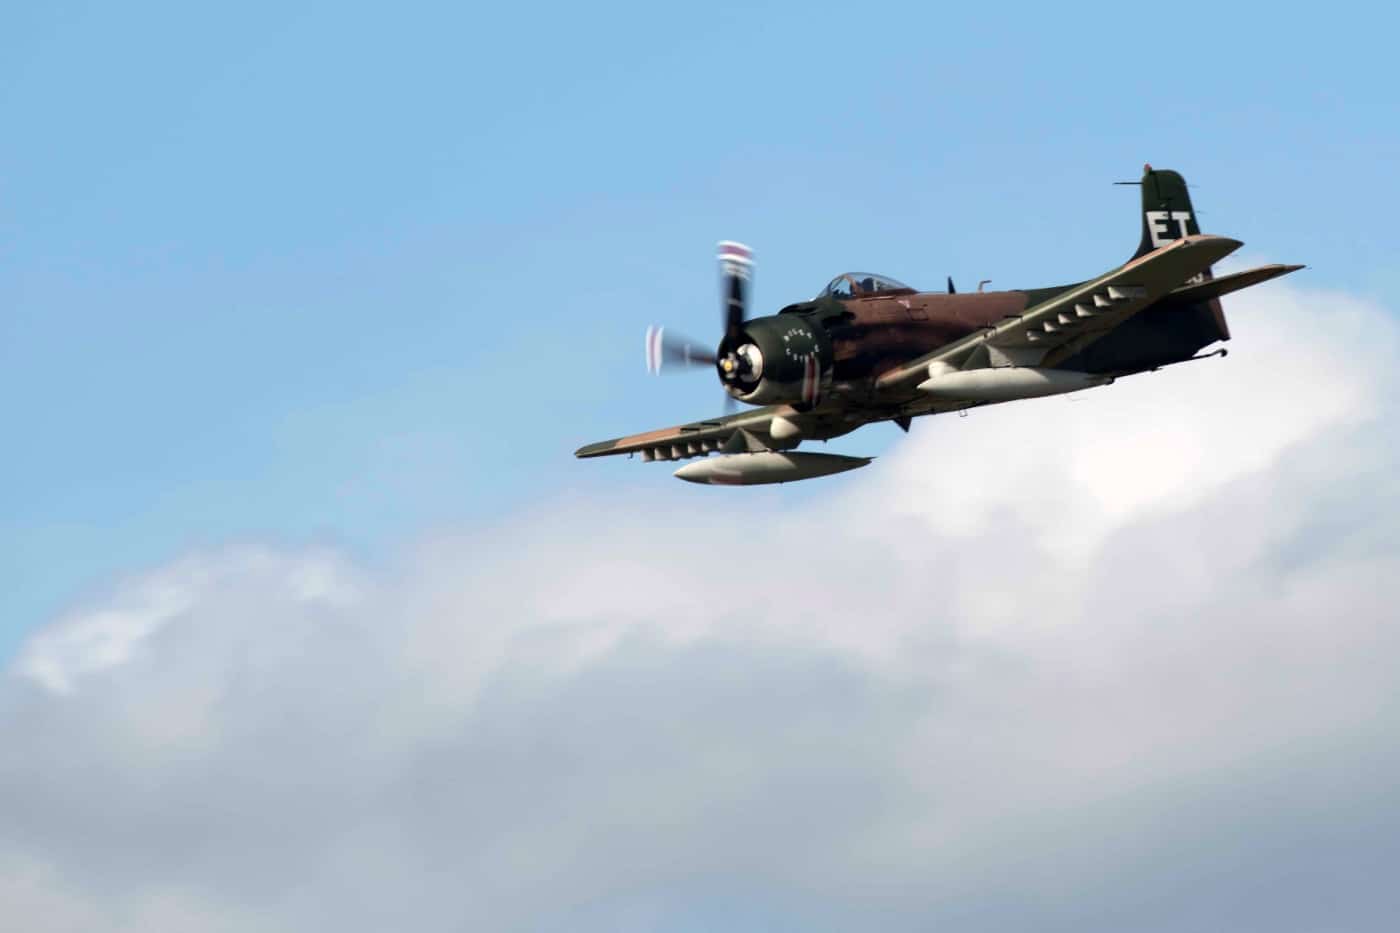 a-1 skyraider in flight